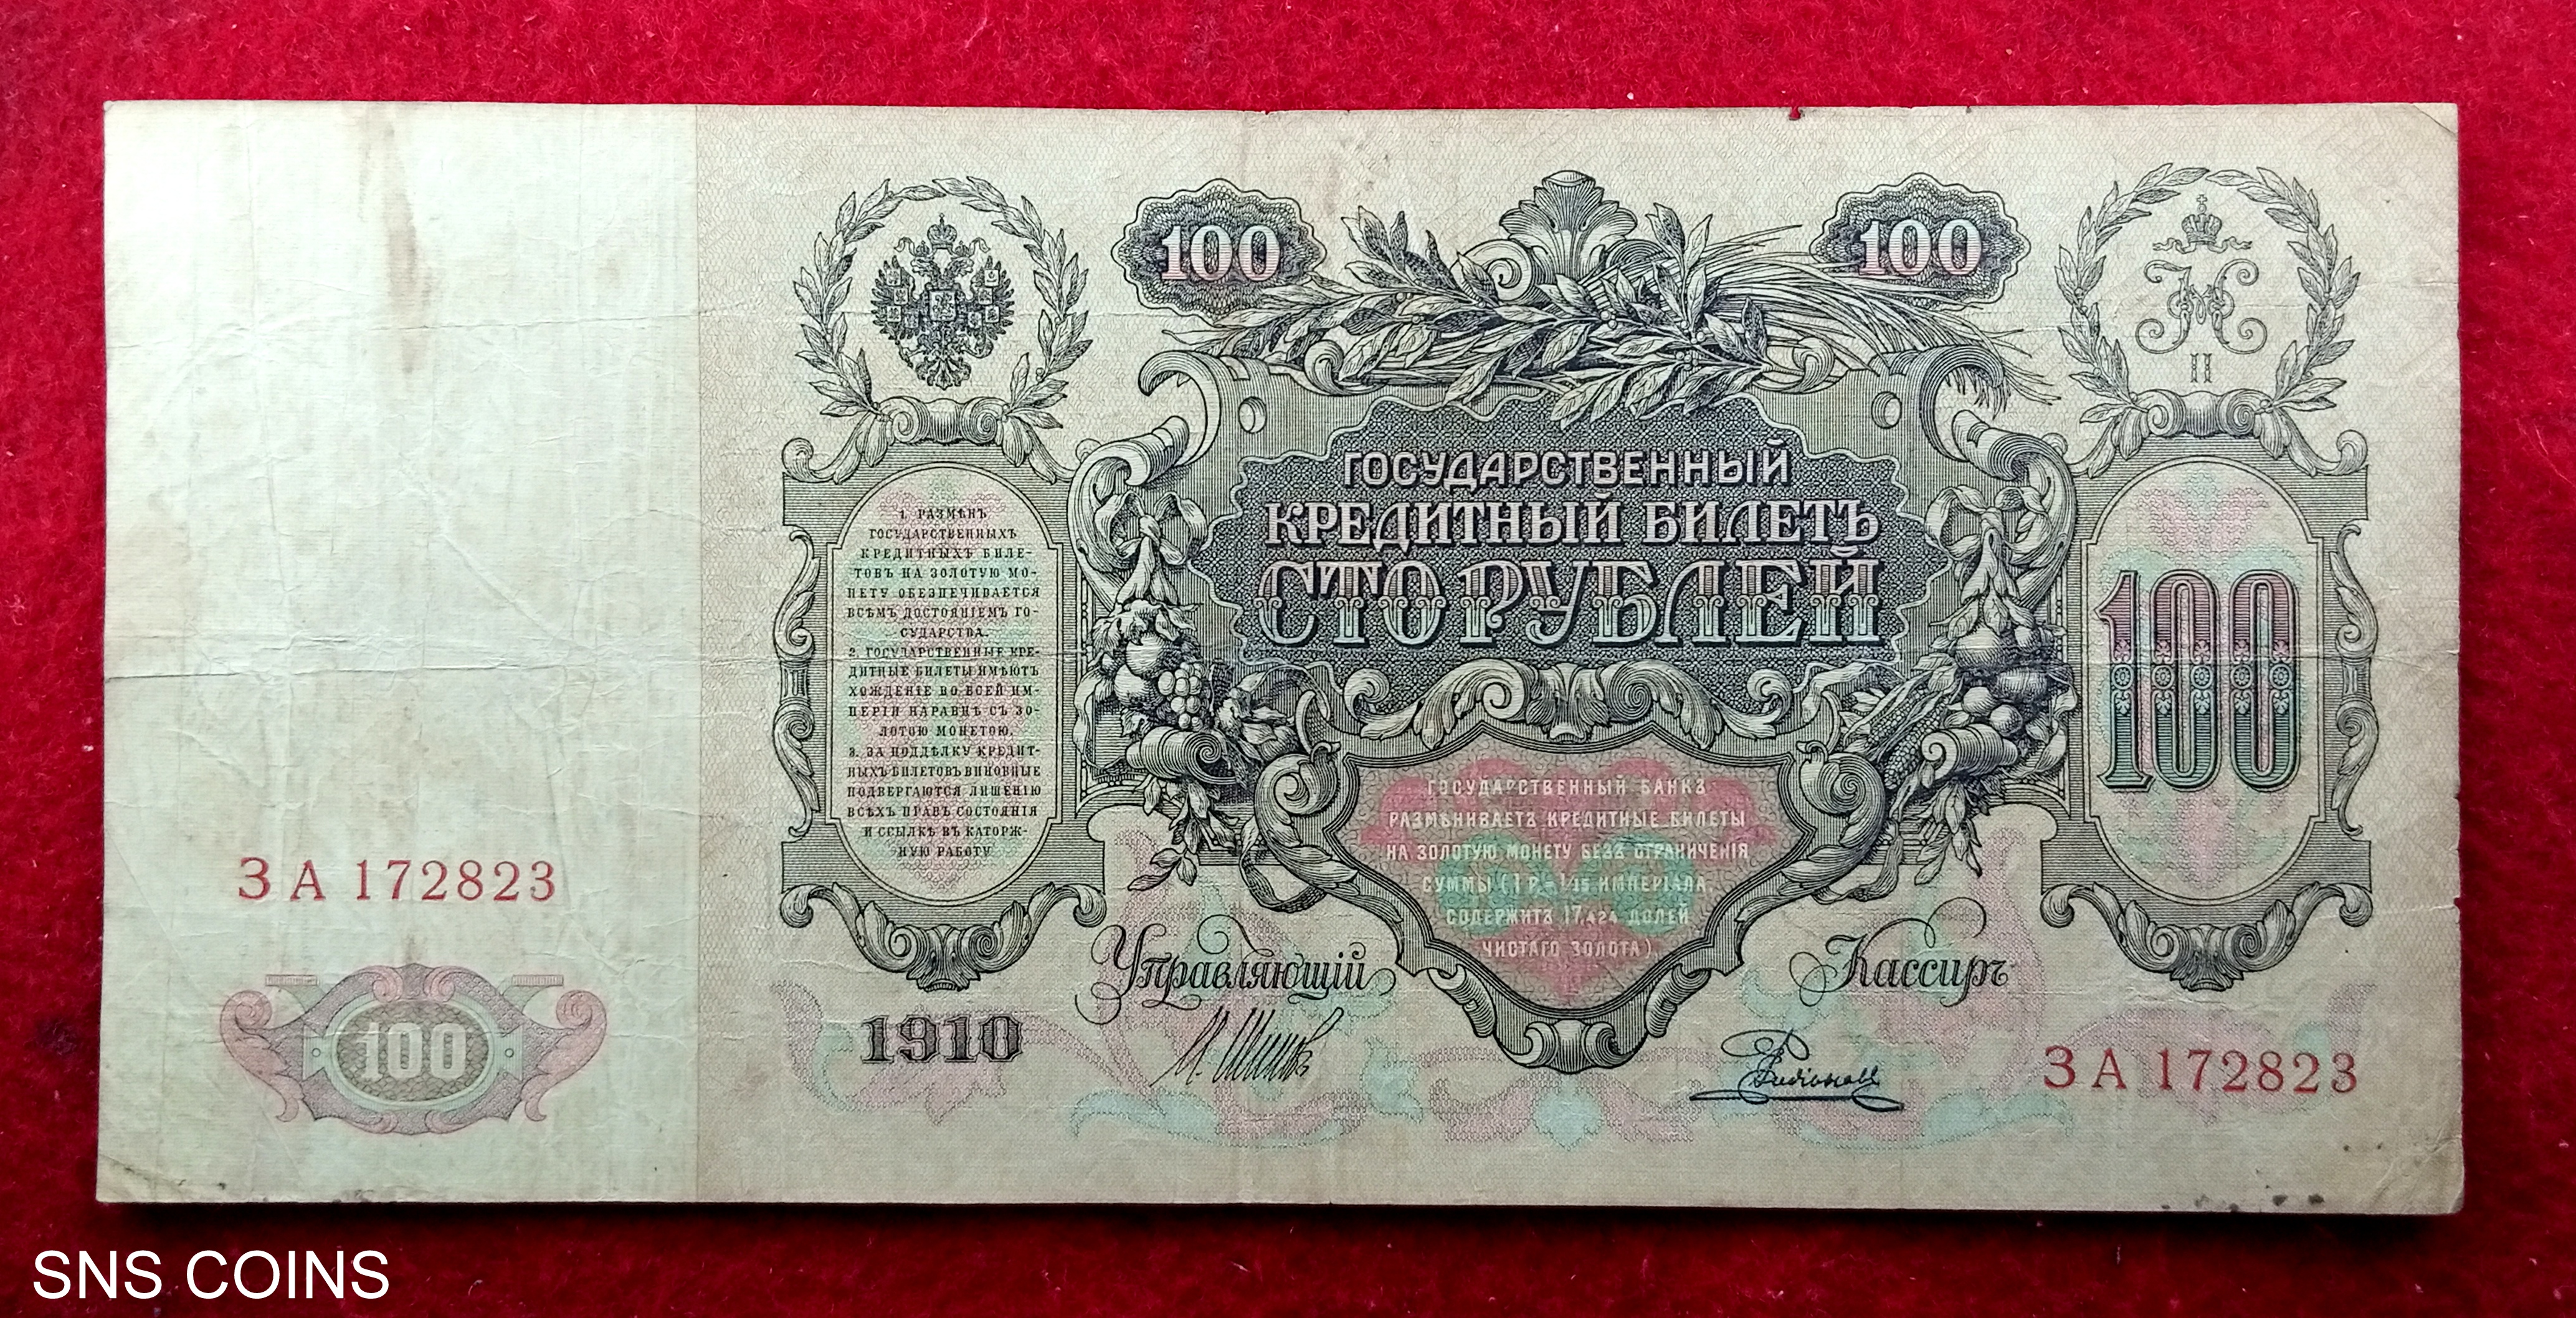 Russian Empire 100 Rubles 1910 Banknote